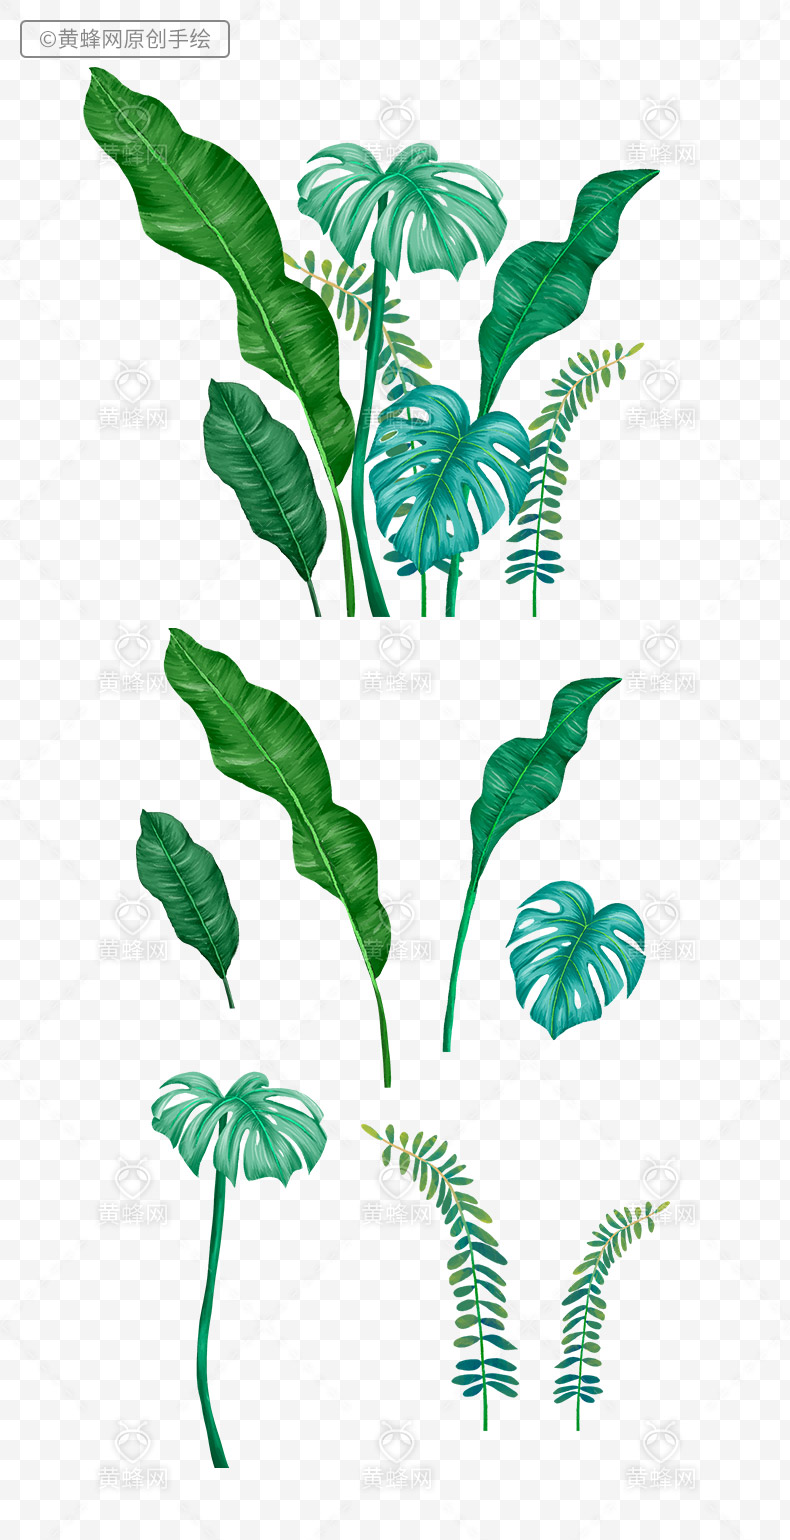 手绘植物叶子,植物叶子,手绘叶子,手绘绿叶,绿叶,夏天,夏季,夏天叶子,热带植物叶子,手绘热带雨林,png,免扣素材,